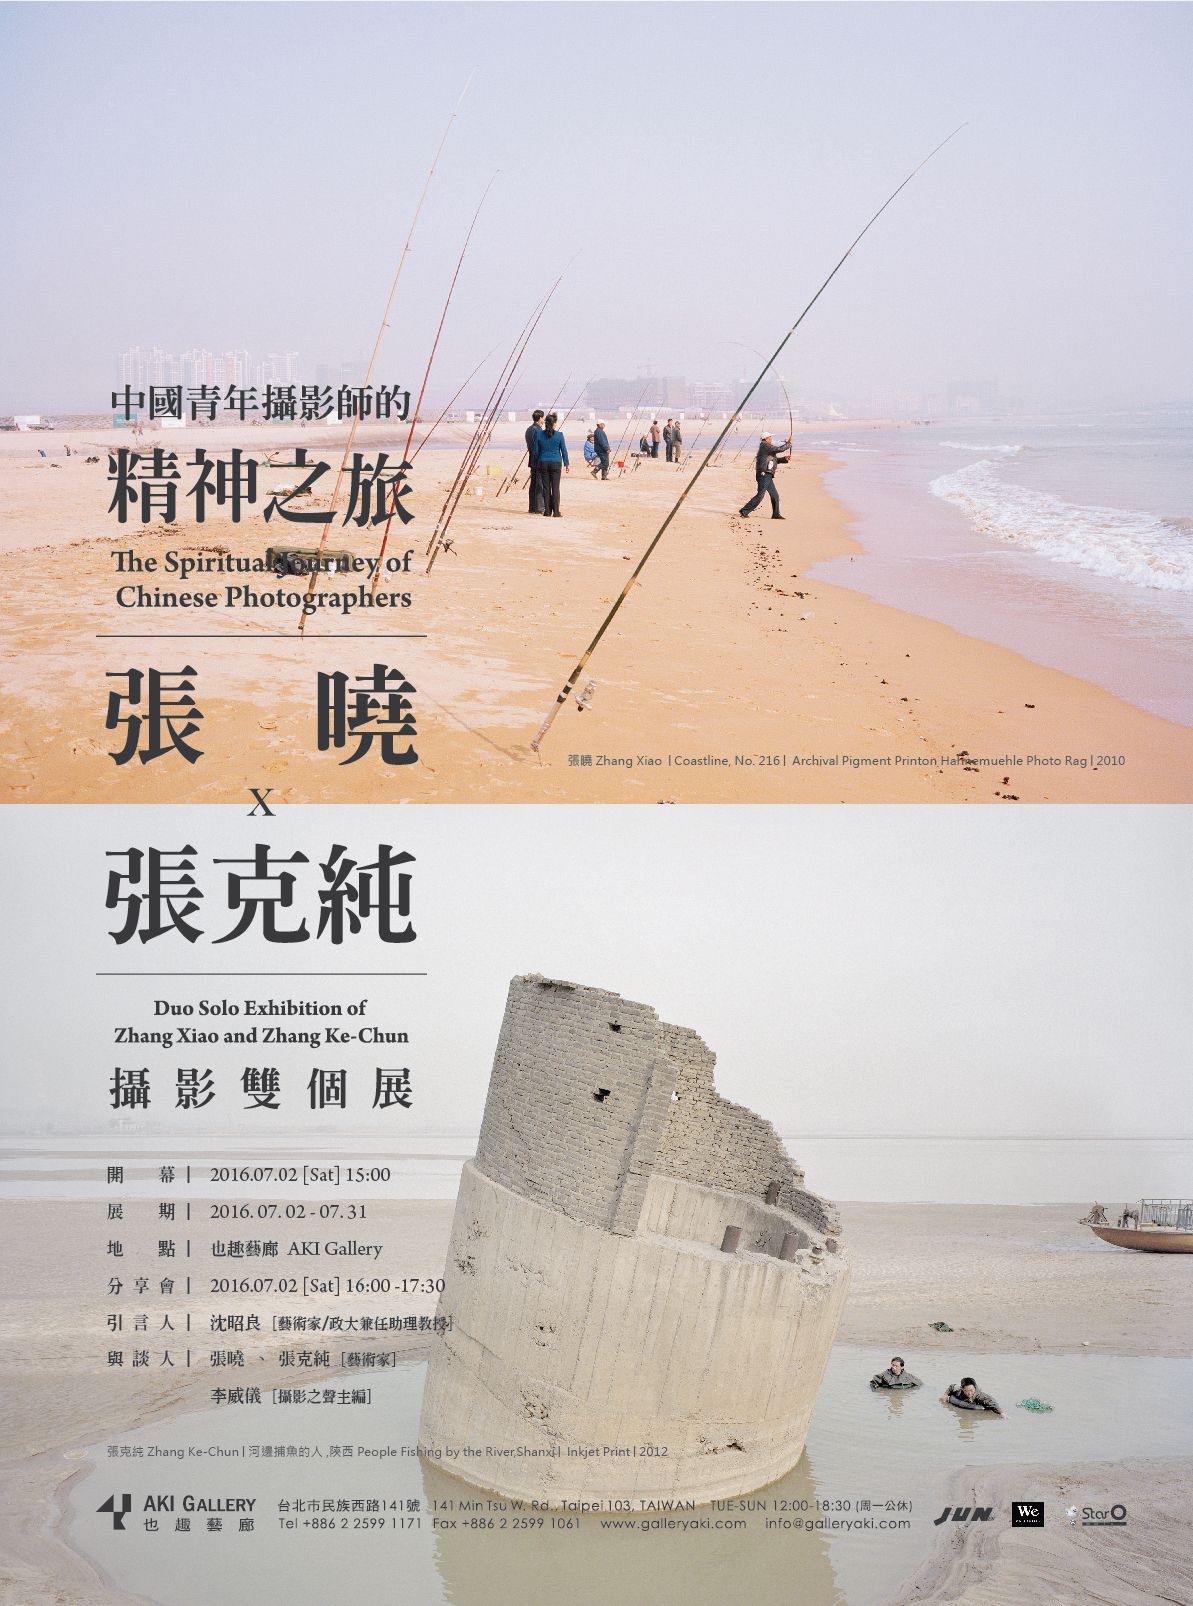 张晓、张克纯摄影双个展 | 中國青年攝影師的精神之旅 